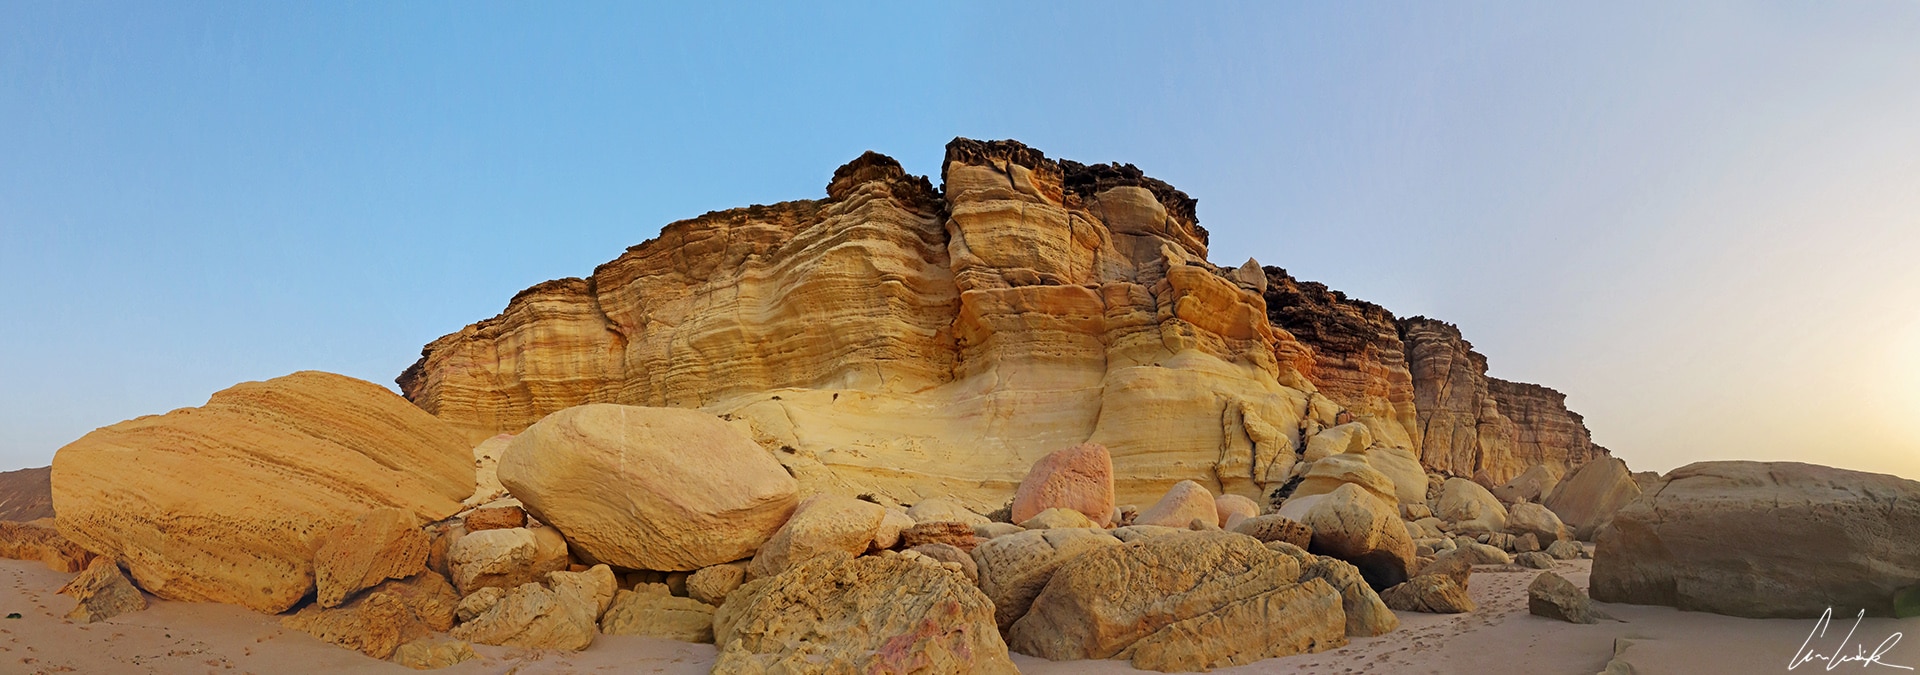 La côte orientale du Sultanat d’Oman: promenade le long du littoral